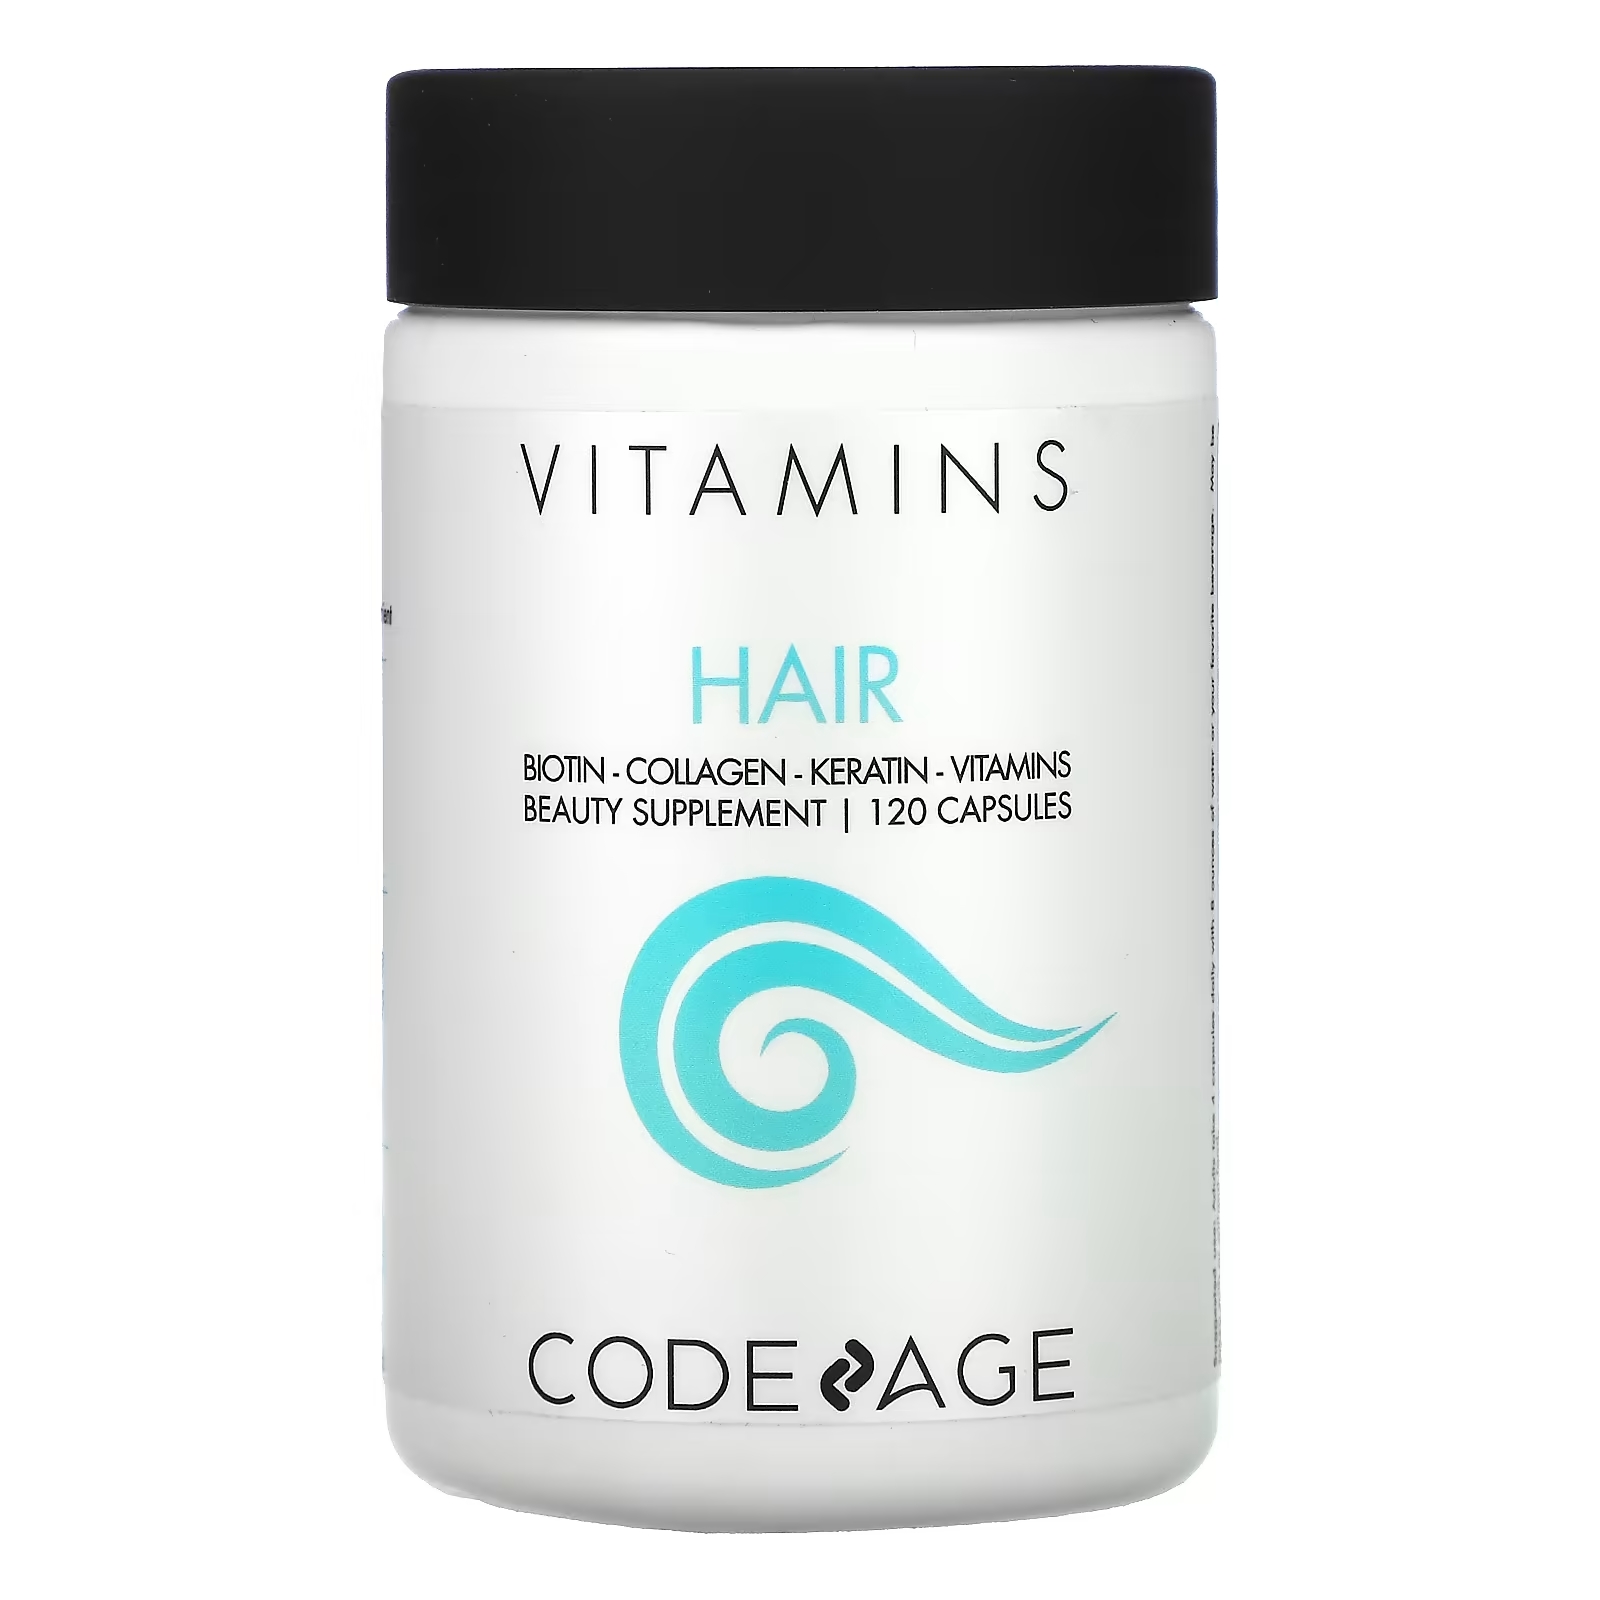 Codeage Витамины для волос биотин коллаген кератин, 120 капсул витамины для волос 120 капсул codeage